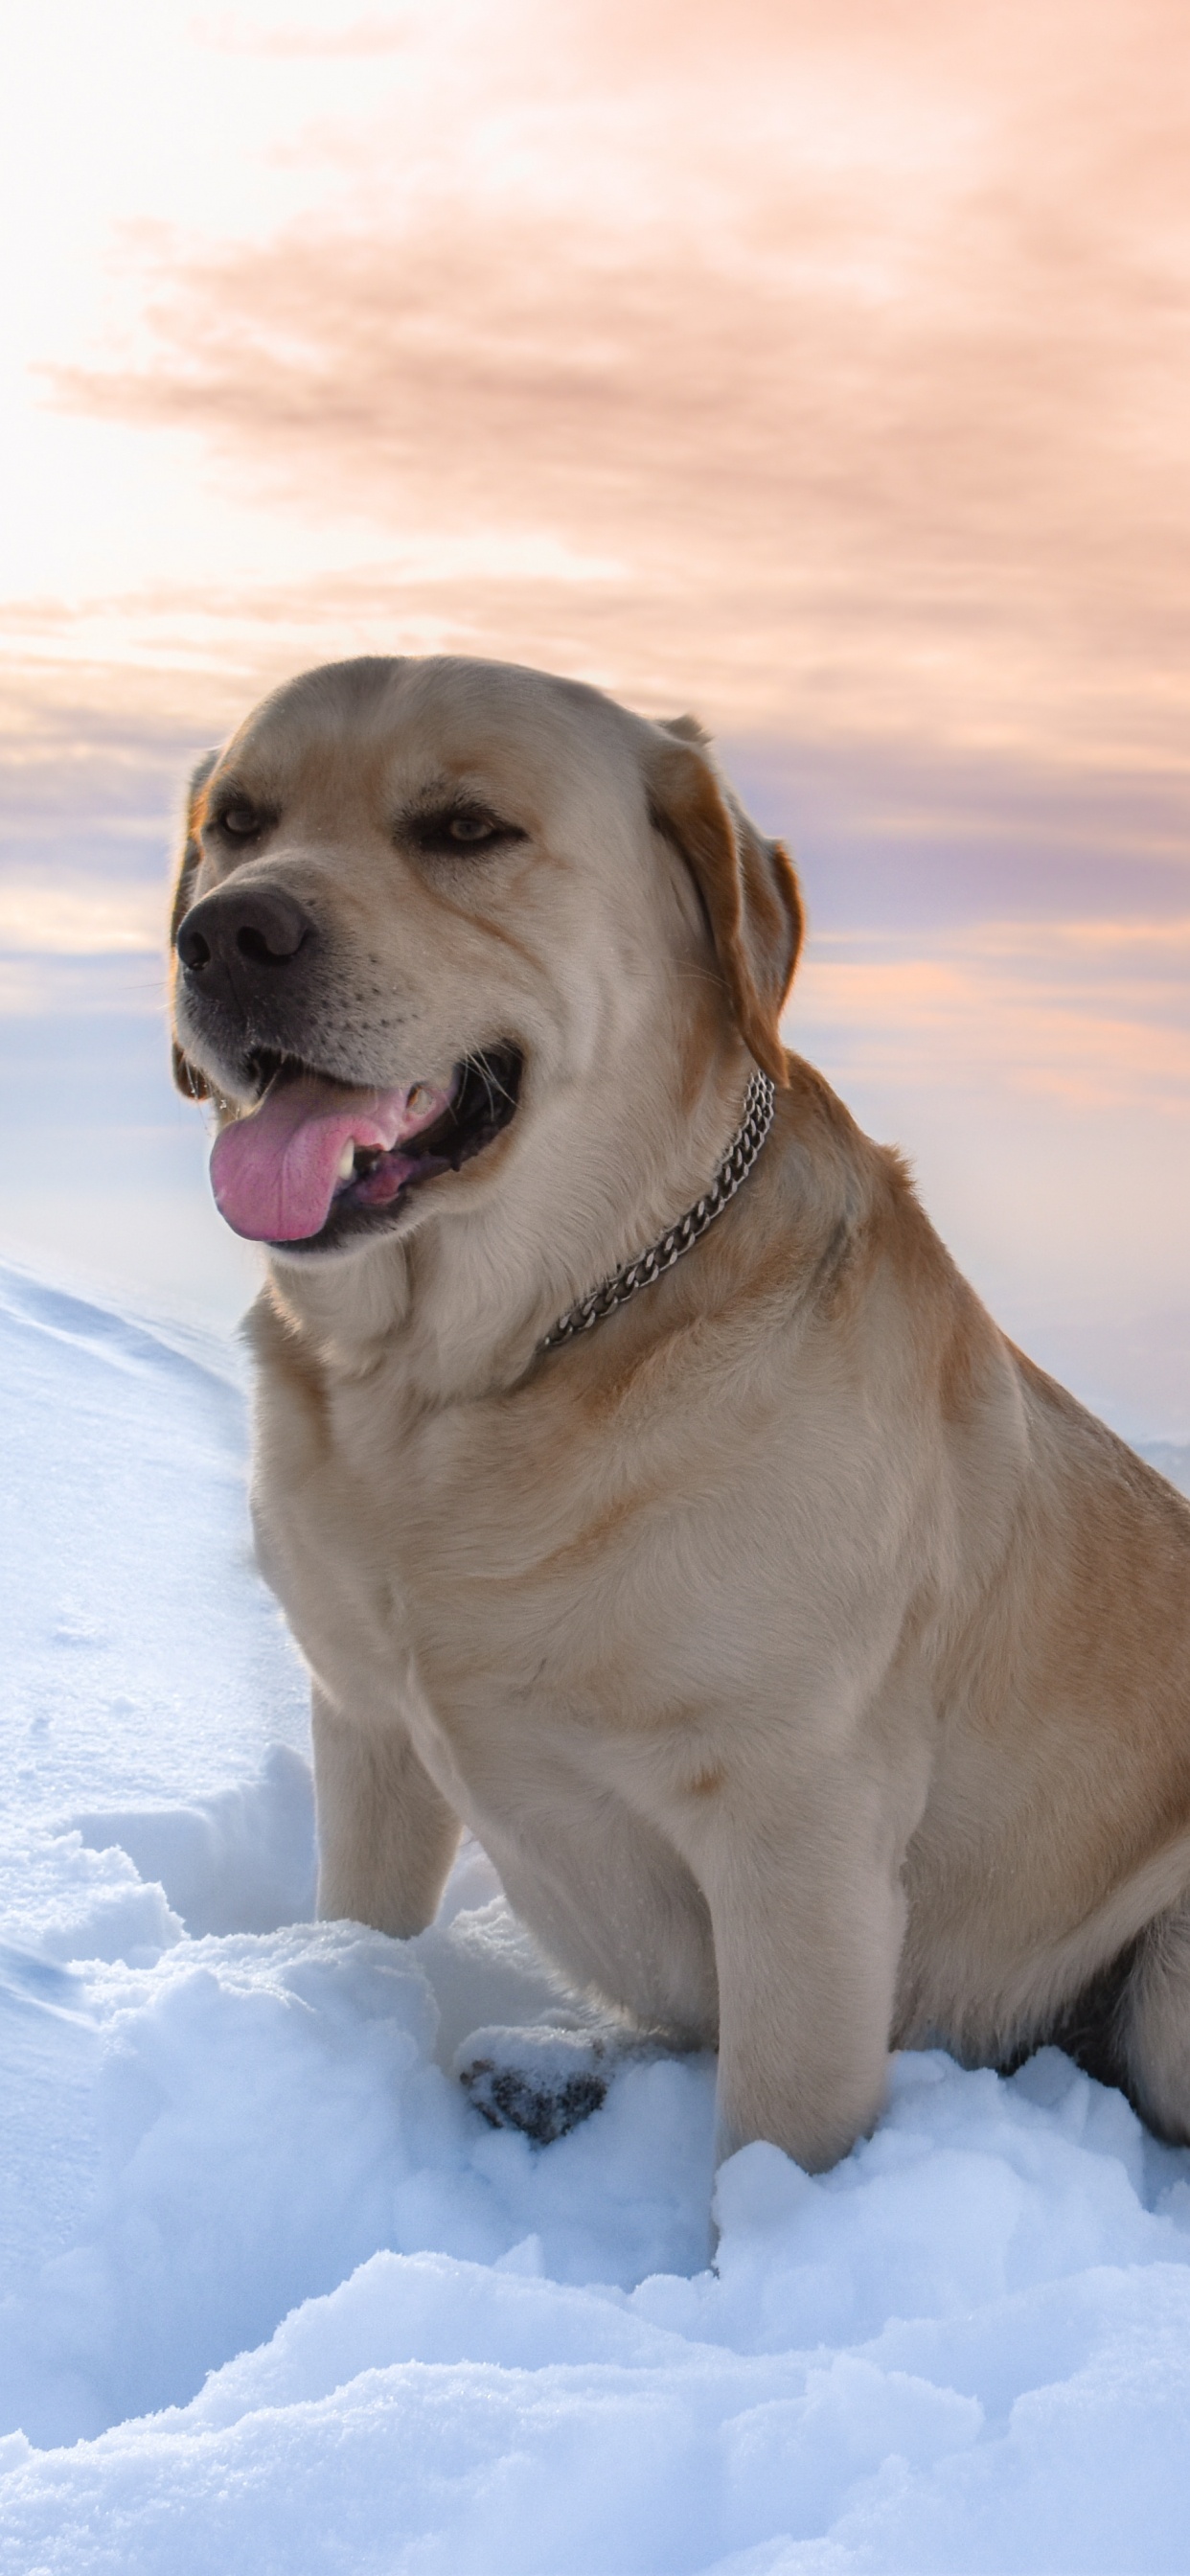 Brauner, Kurzhaariger Hund Auf Schneebedecktem Boden Tagsüber. Wallpaper in 1242x2688 Resolution